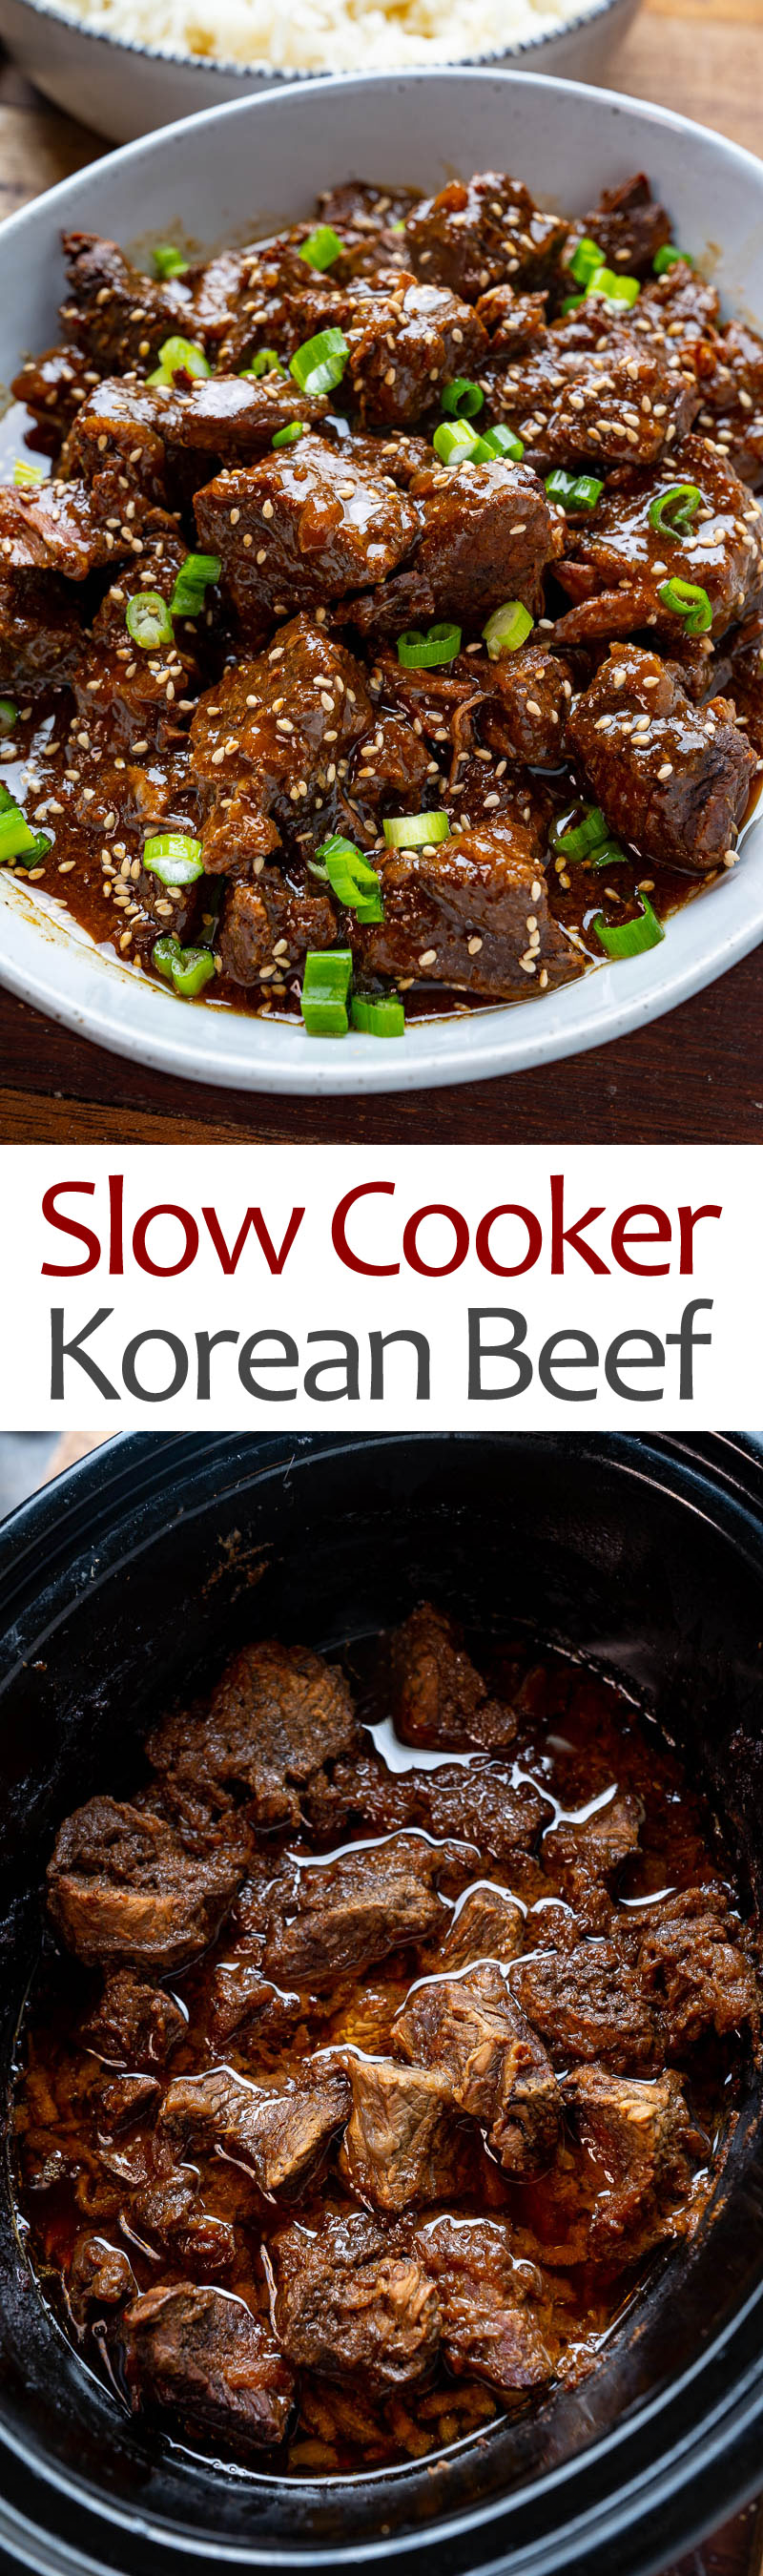 Slow Cooker Korean Beef